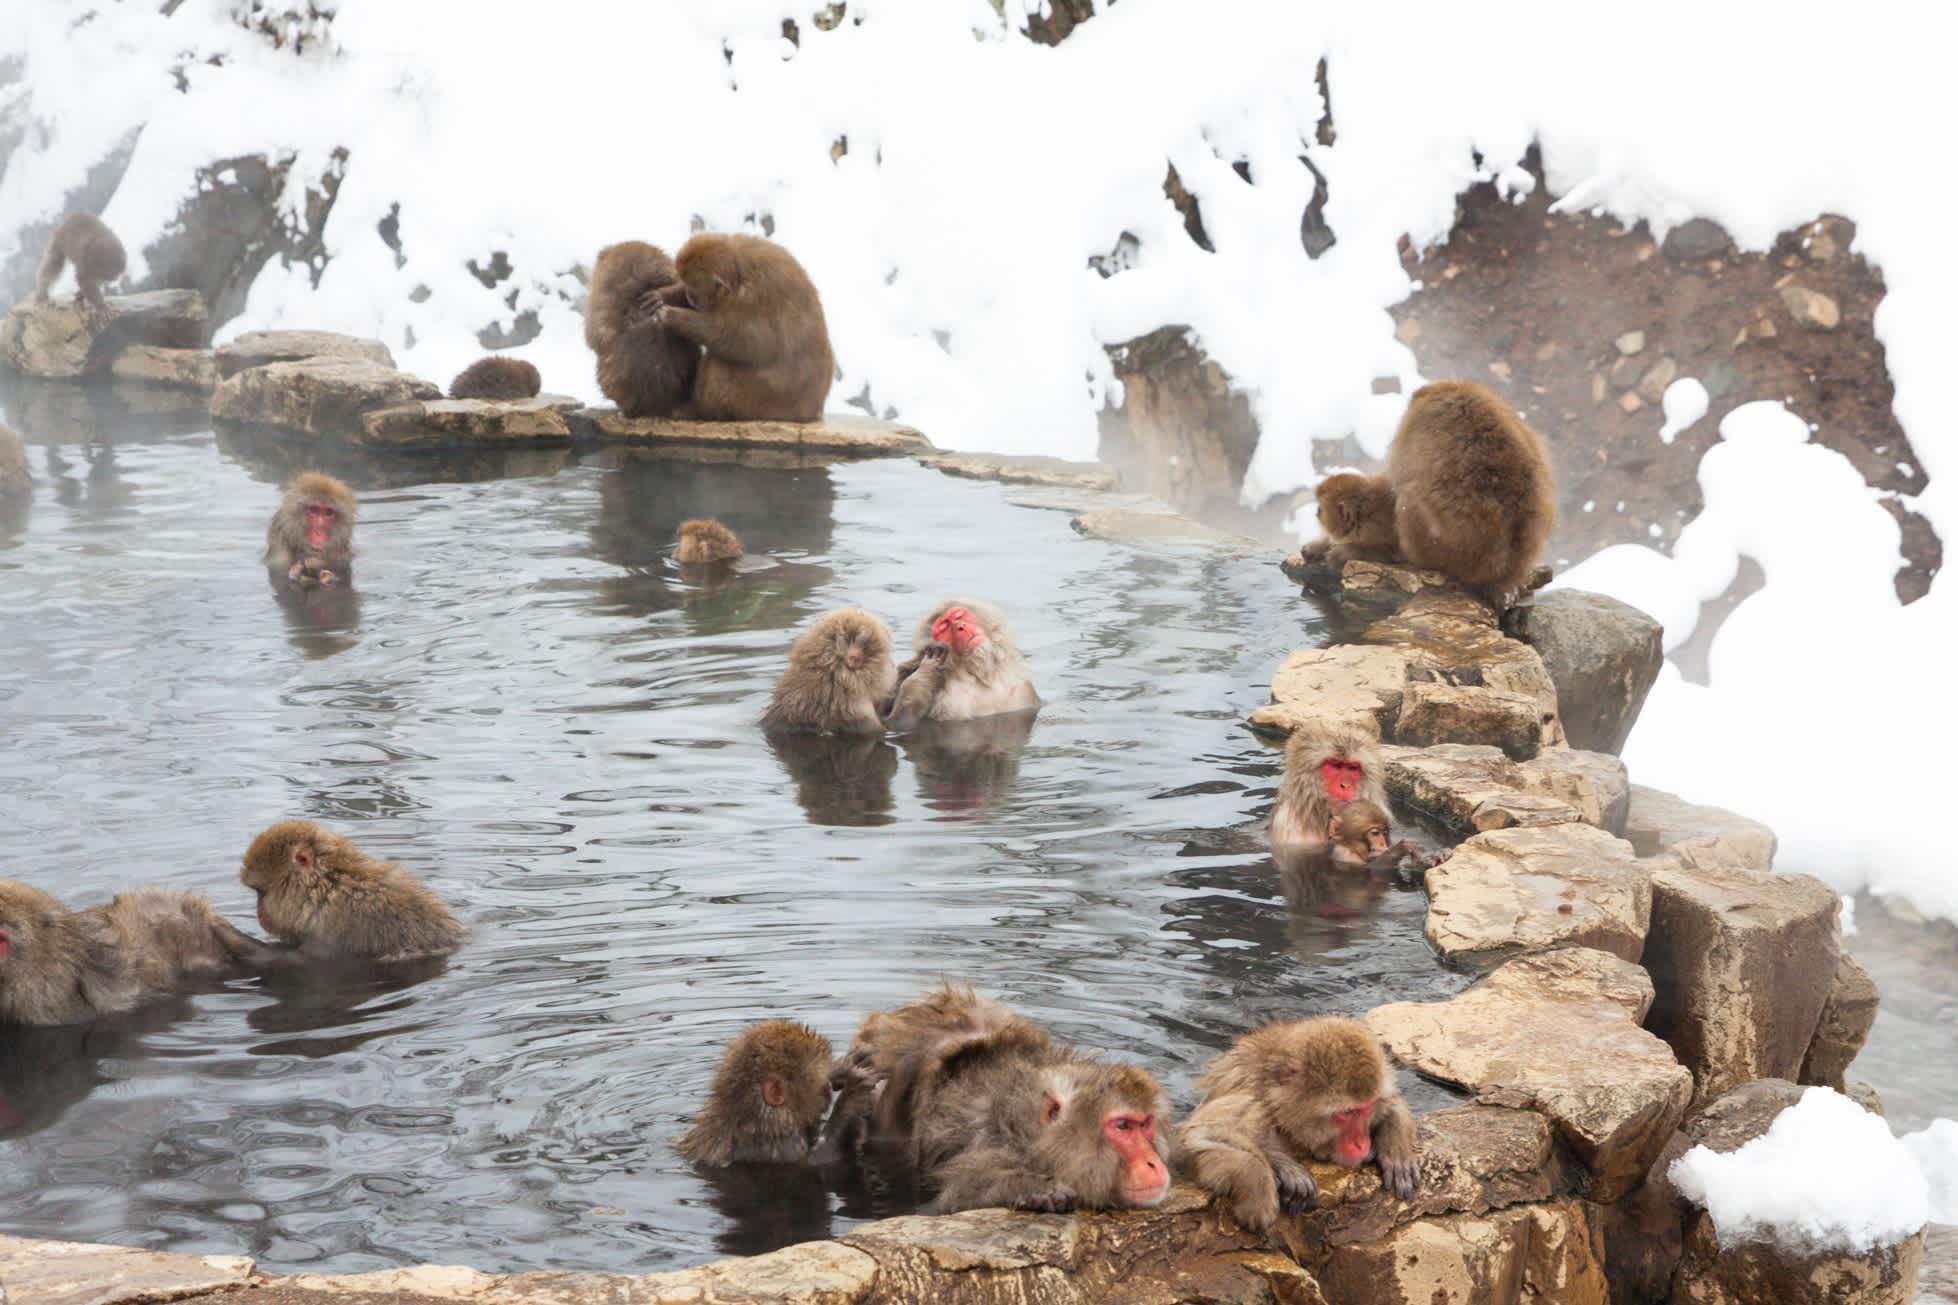 Snow Monkeys in einer heißen Quelle